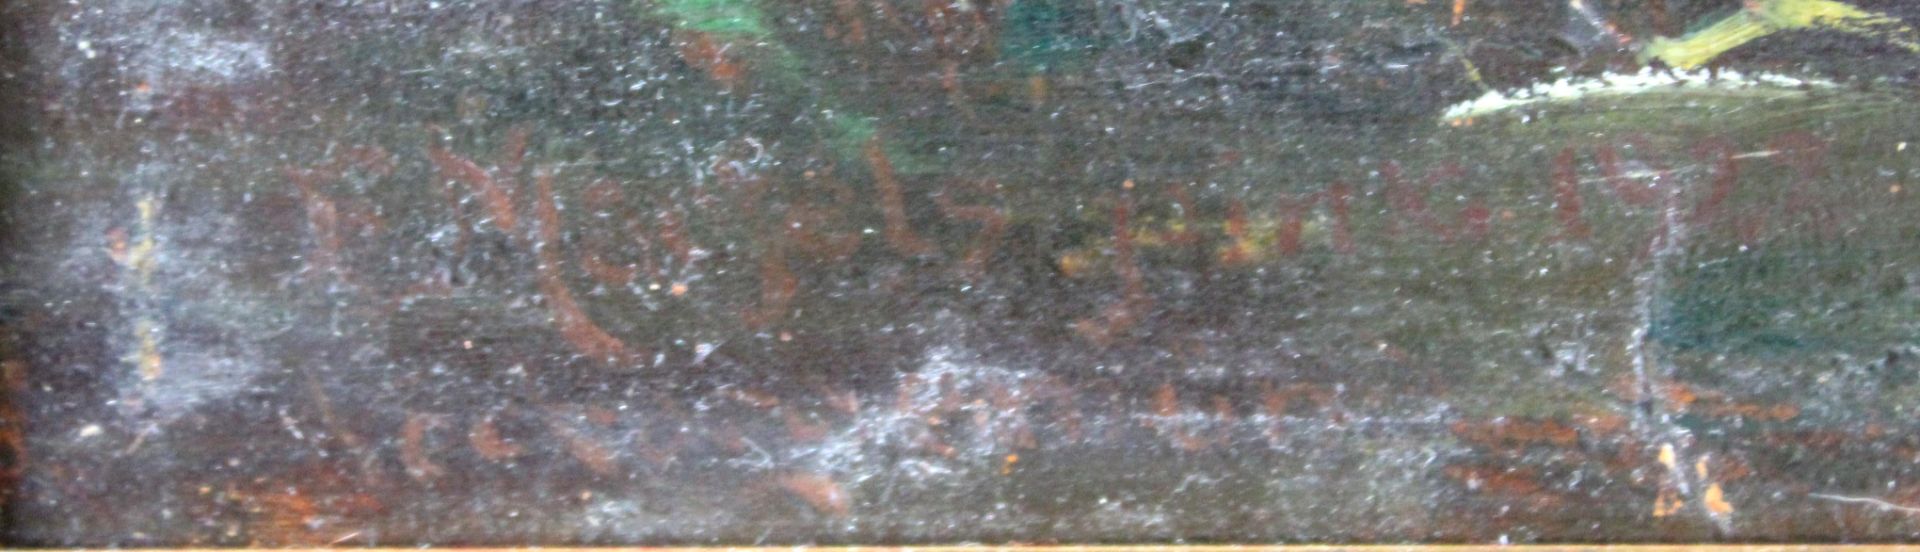 Ernst MARFELS (1886 - 1958). Fluss.51 cm x 81 cm. Gemälde. Öl auf Leinwand. Links unten signiert und - Bild 2 aus 4